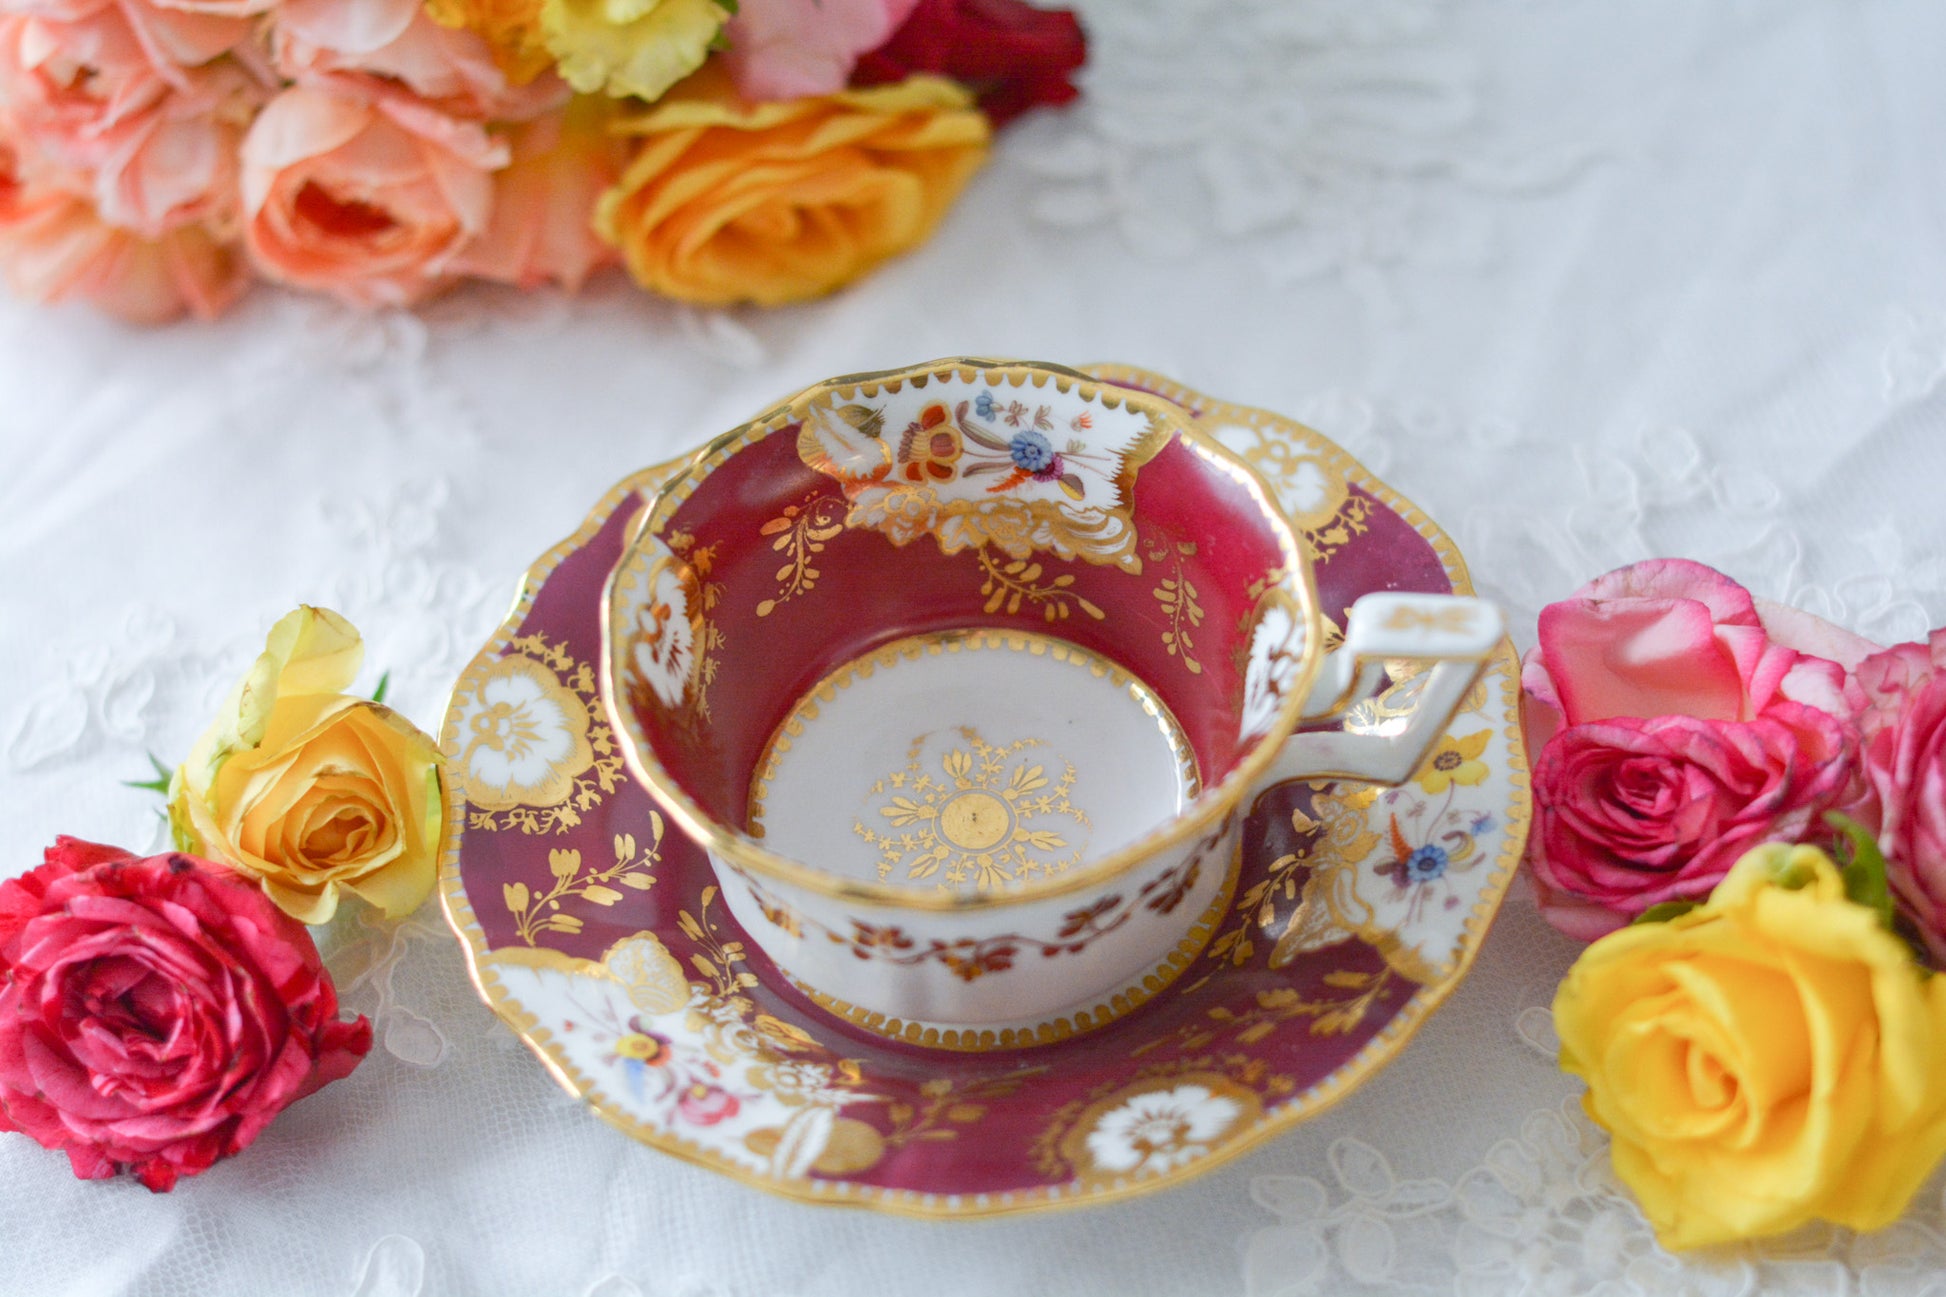 １９世紀のアンティークカップ&ソーサー。マルーンレッドのお色が大変美しいです。ハンドペイントで花々が生き生きと描かれていて、金彩の模様も大変美しいお品です。